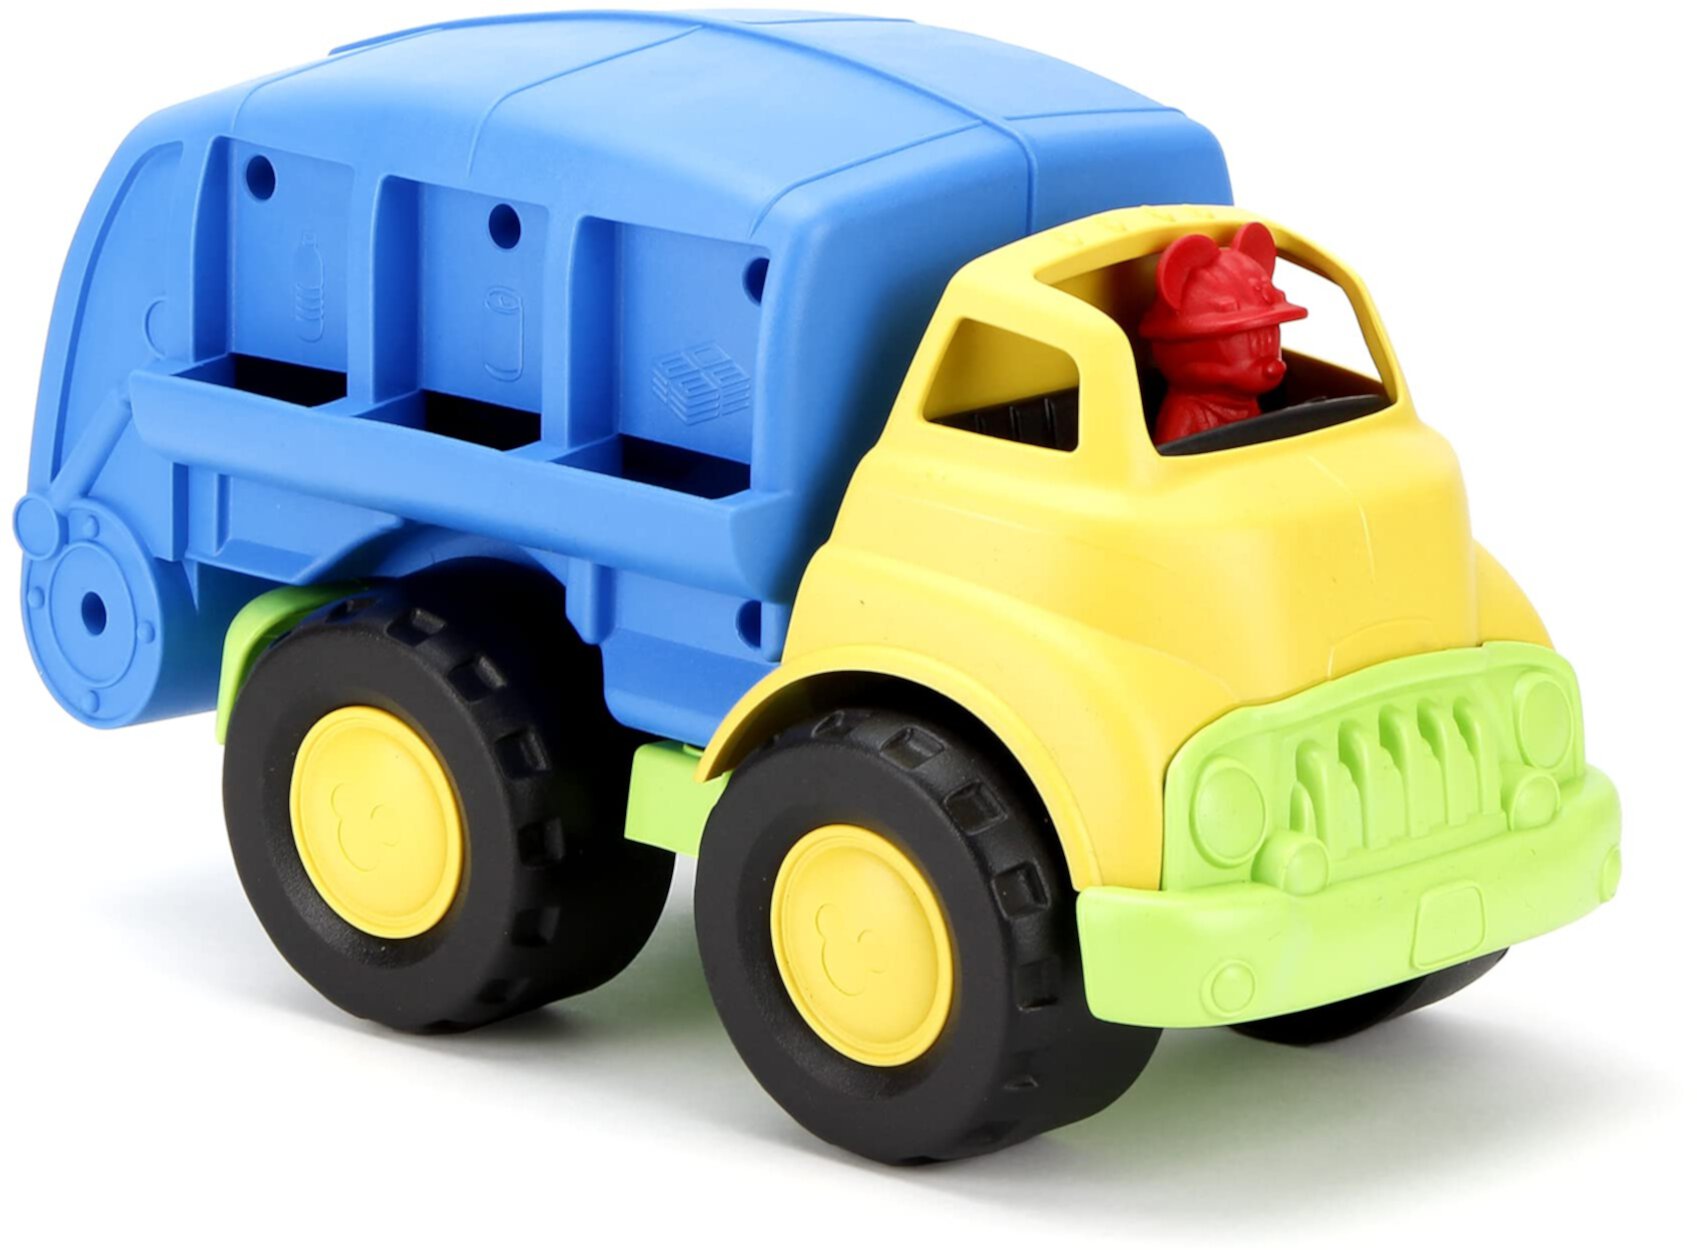 Green Toys Disney Baby Exclusive Mickey Mouse Recycling Truck, Blue - Pretend Play, Motor Skills, Kids Toy Vehicle. Не содержит BPA, фталатов, ПВХ. Можно мыть в посудомоечной машине, переработанный пластик, сделано в США. Green Toys